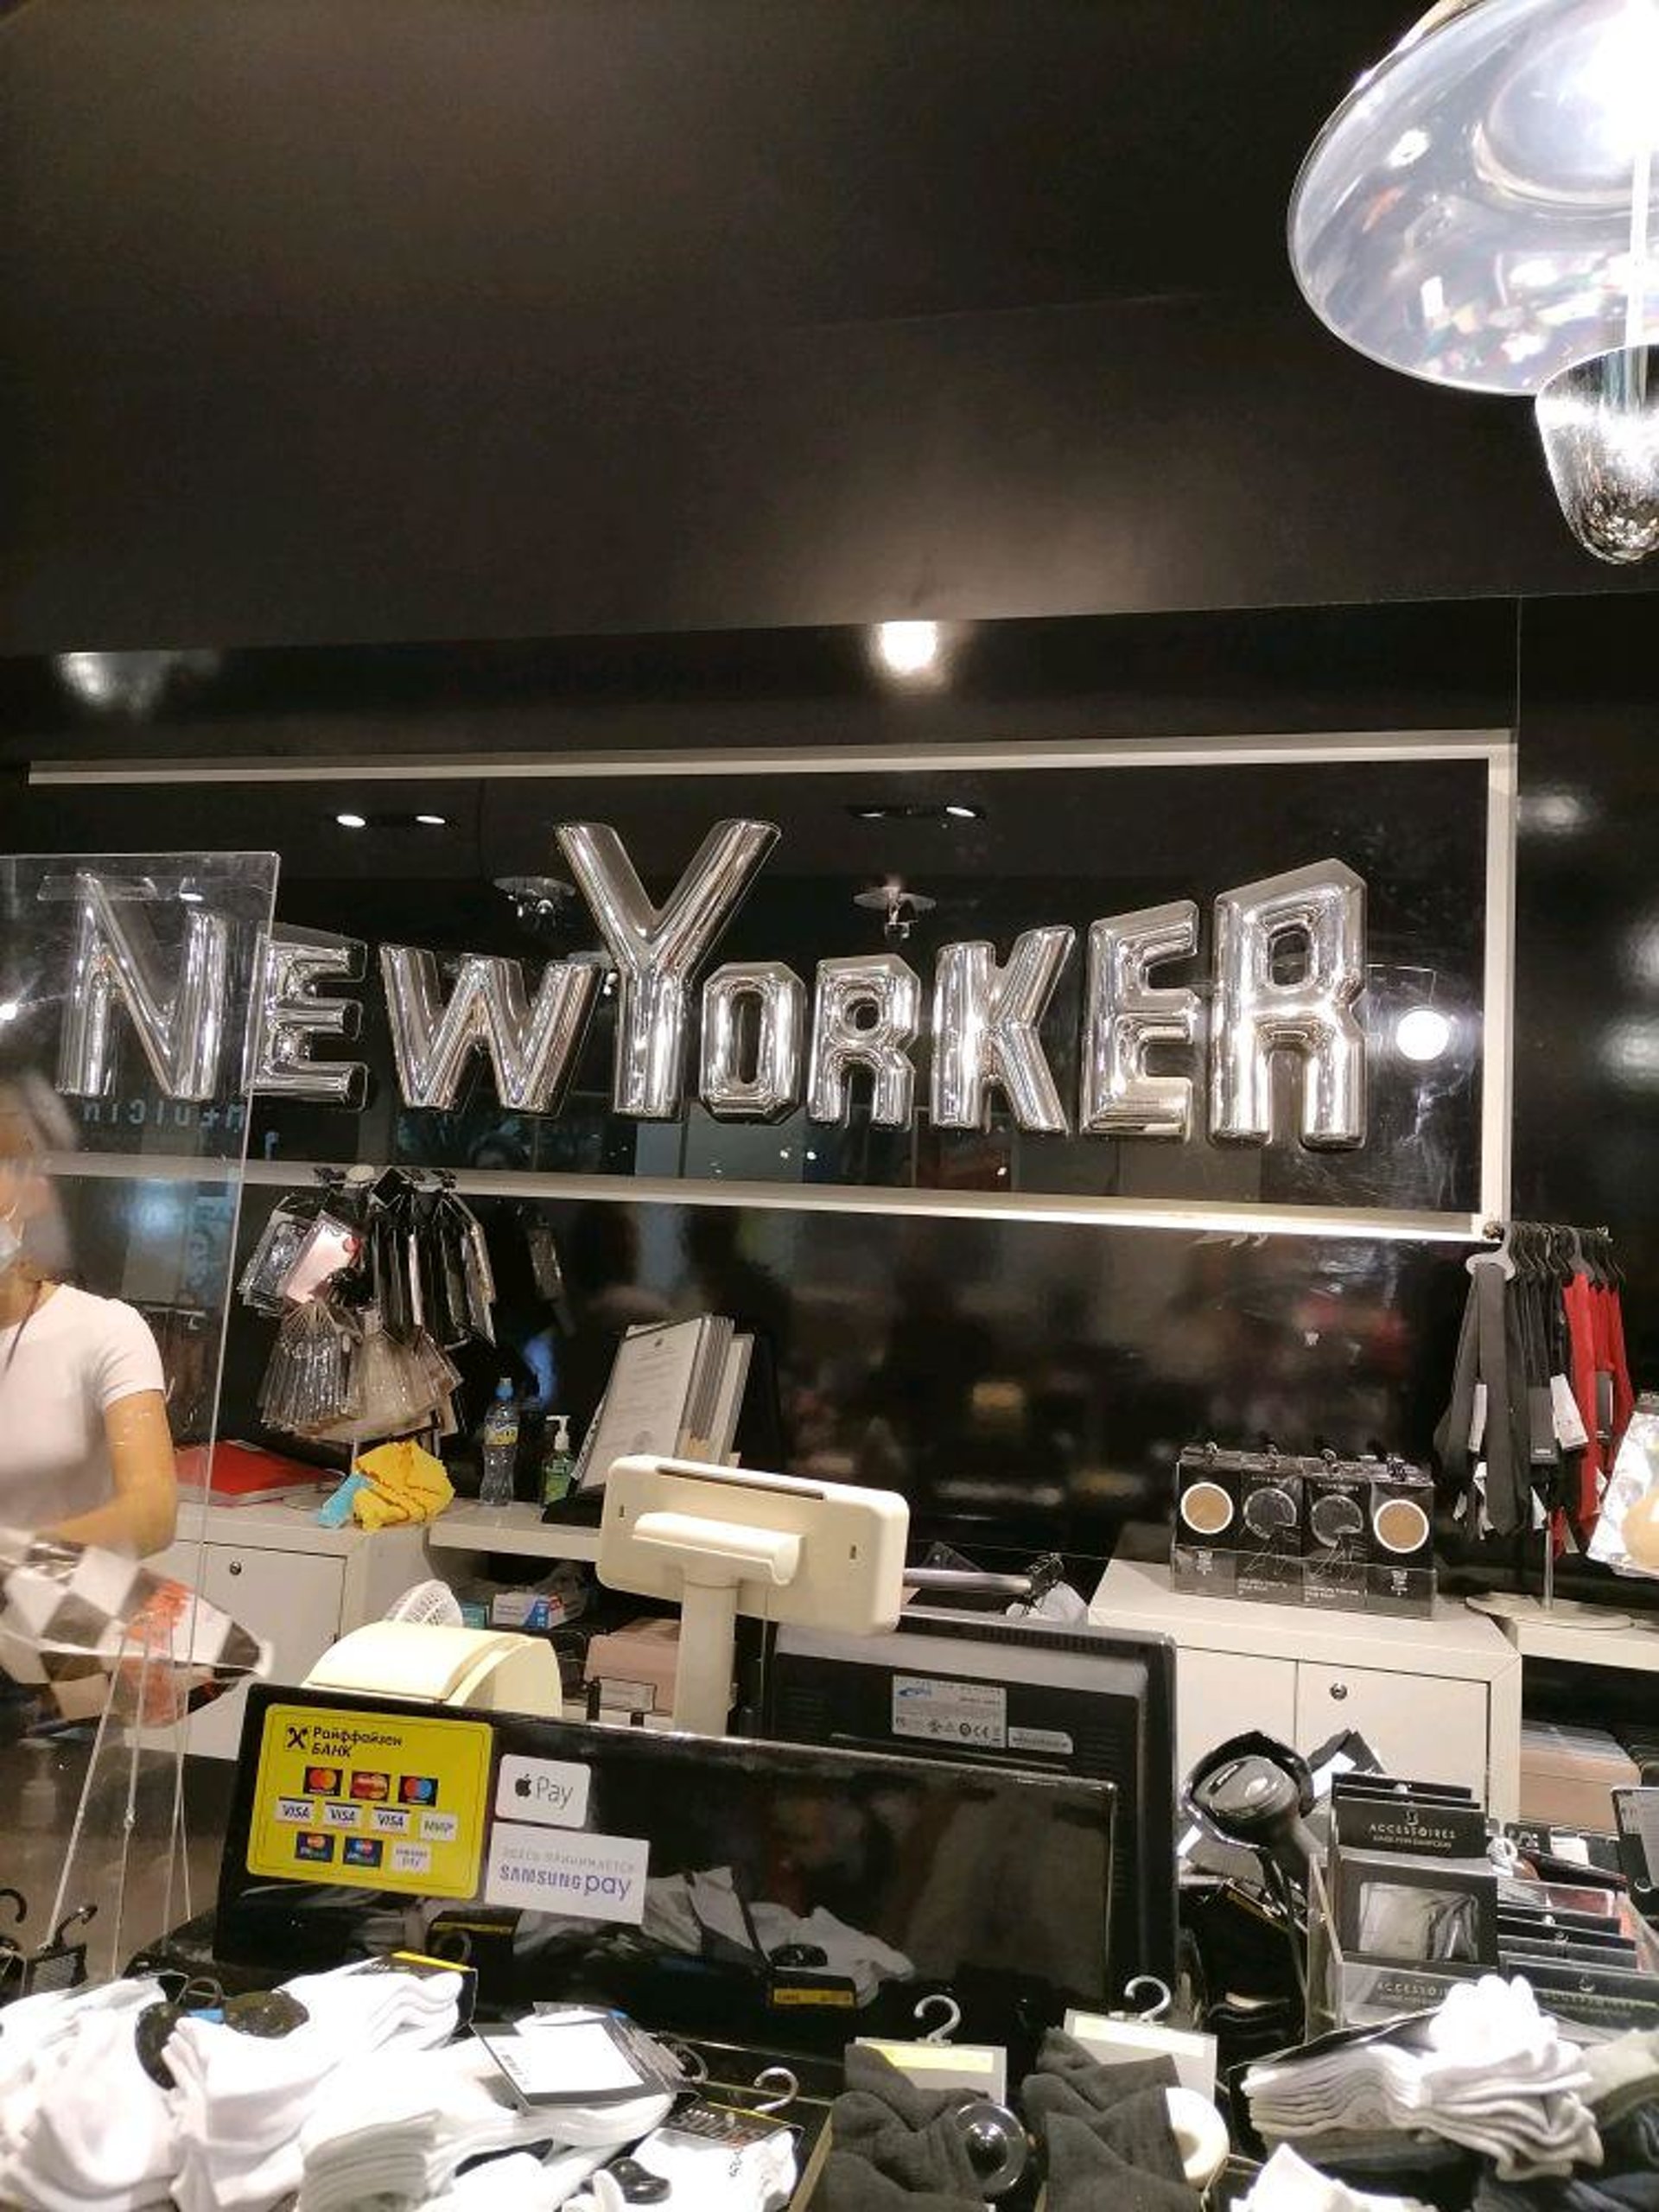 New yorker товары. Магазин Нью йоркер. New Yorker сеть магазинов одежды и аксессуаров. Фирма Нью-Йорк одежда. Магазин New Yorker в меге белая дача.